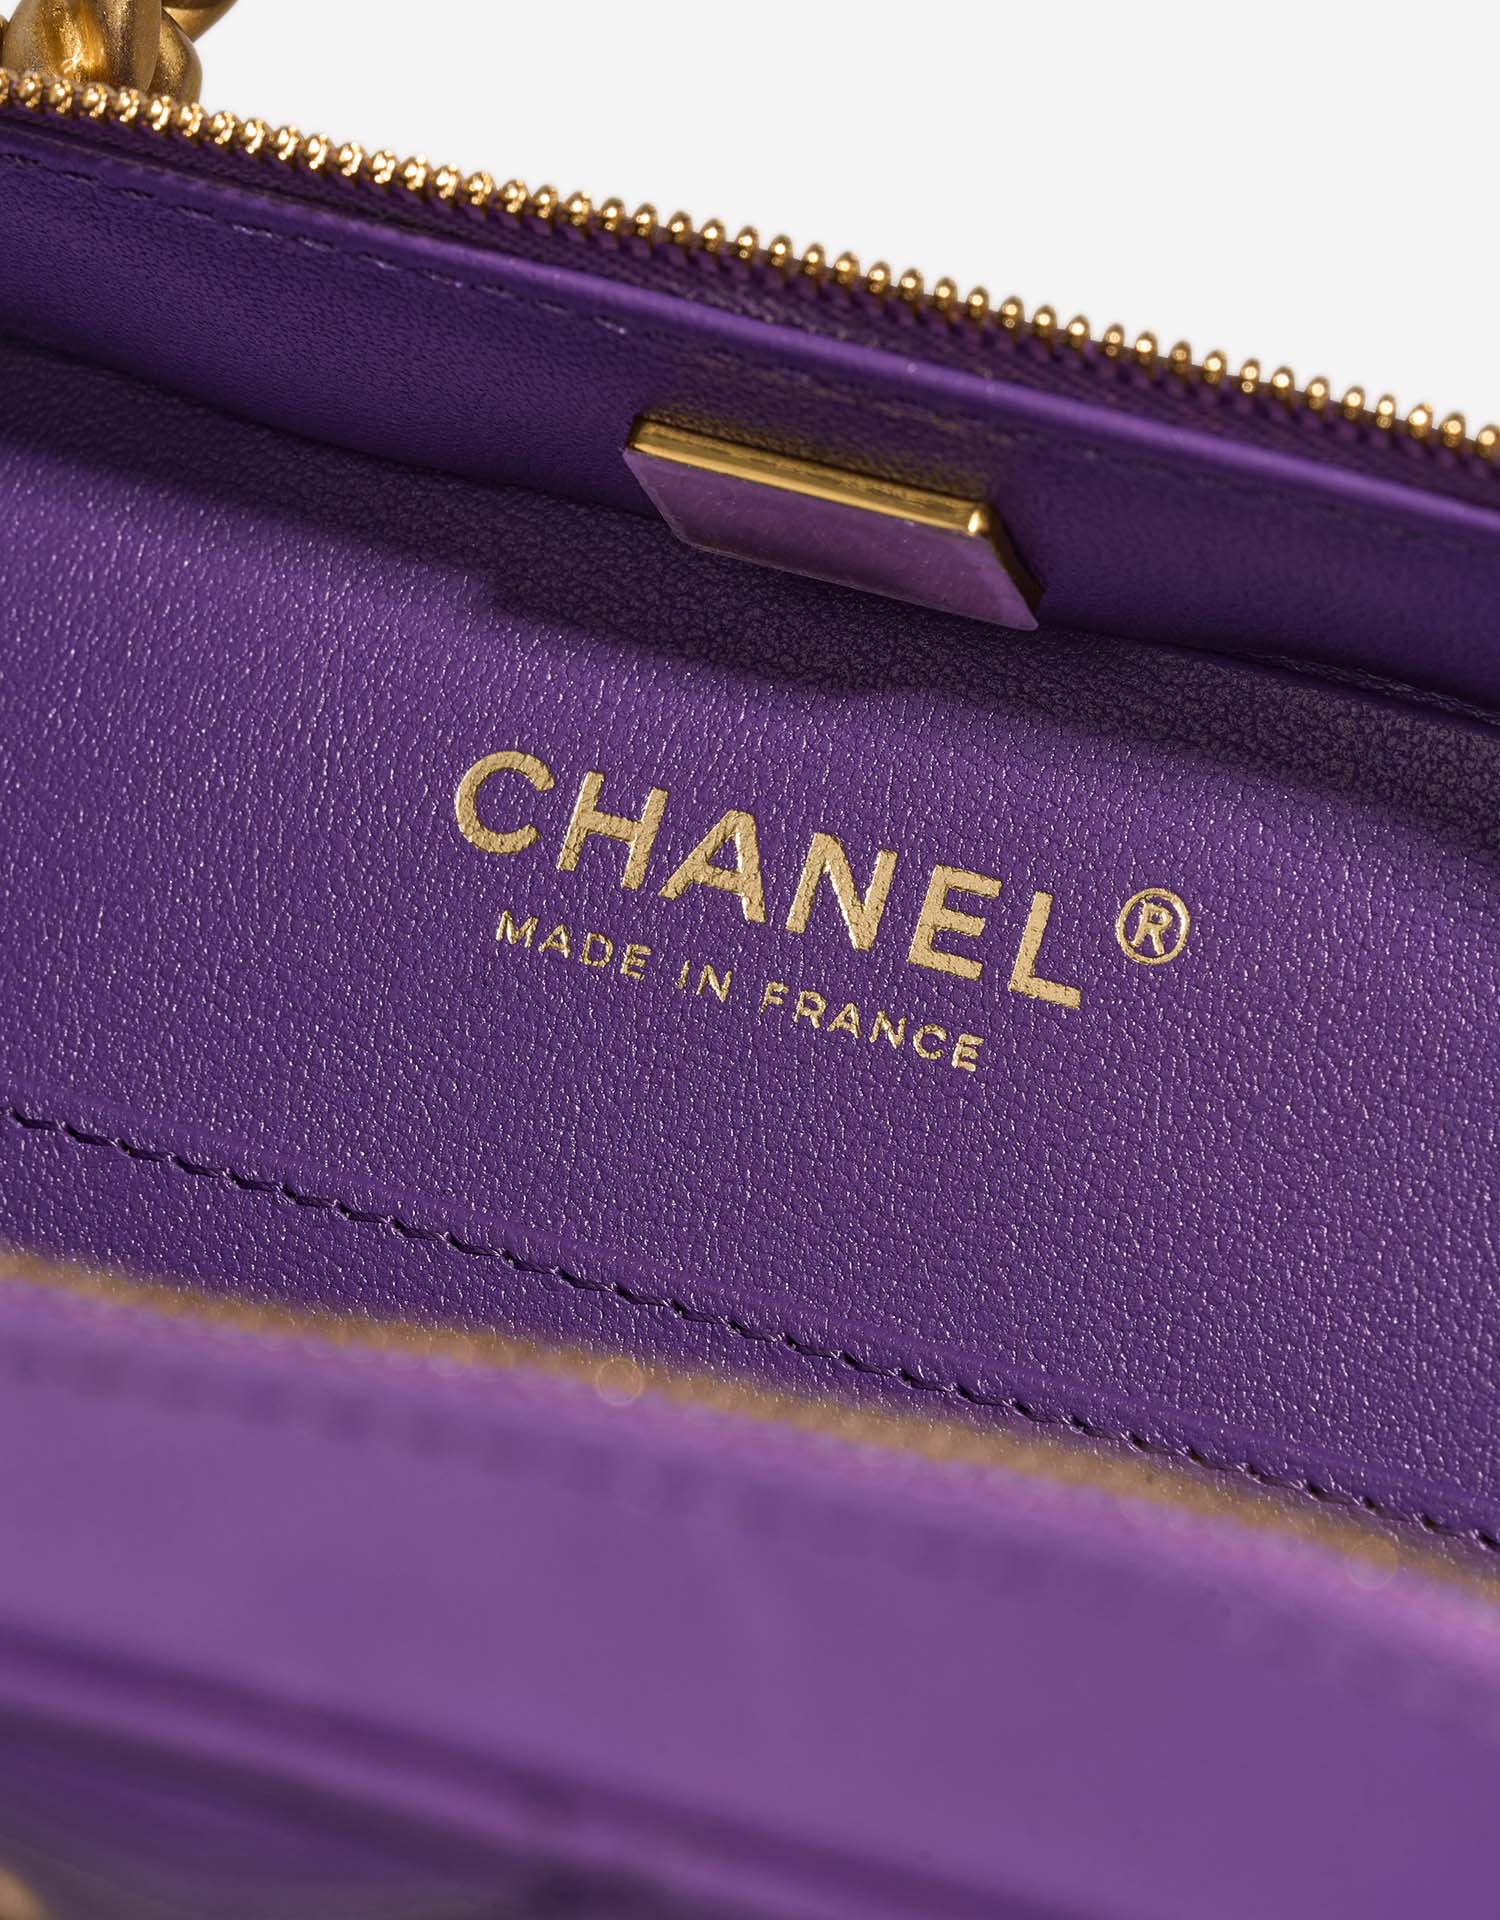 Chanel Vanity Small Violet Logo | Verkaufen Sie Ihre Designer-Tasche auf Saclab.com